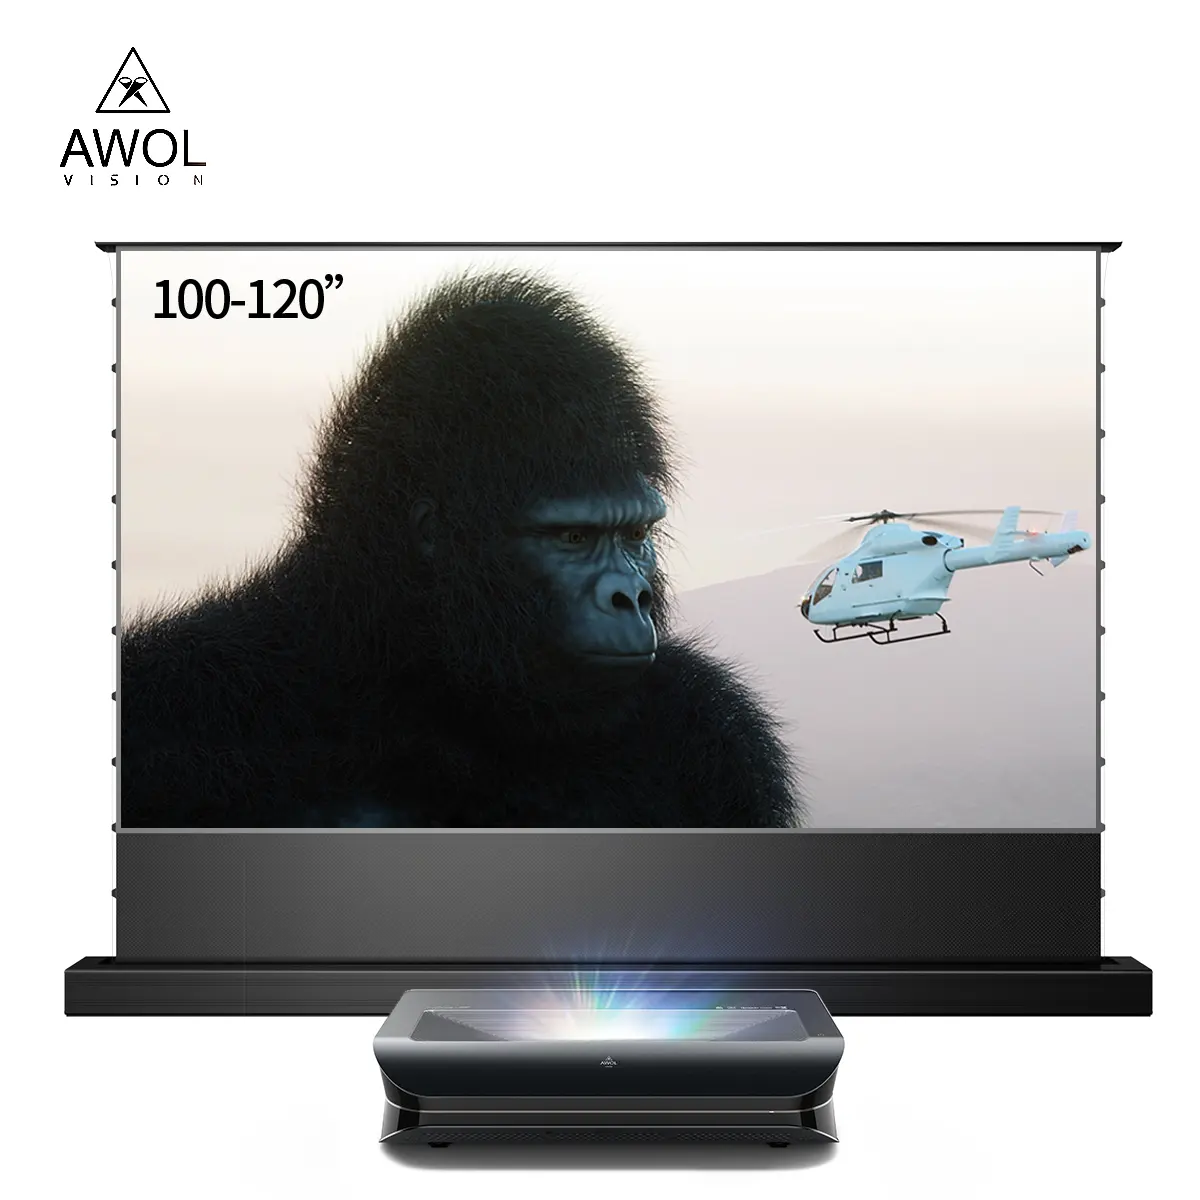 AWOL VISION LTV 3000 pro 150 "ust3D Androidプロジェクターuhd4kシネマビデオホームシアター超短焦点レーザープロジェクター